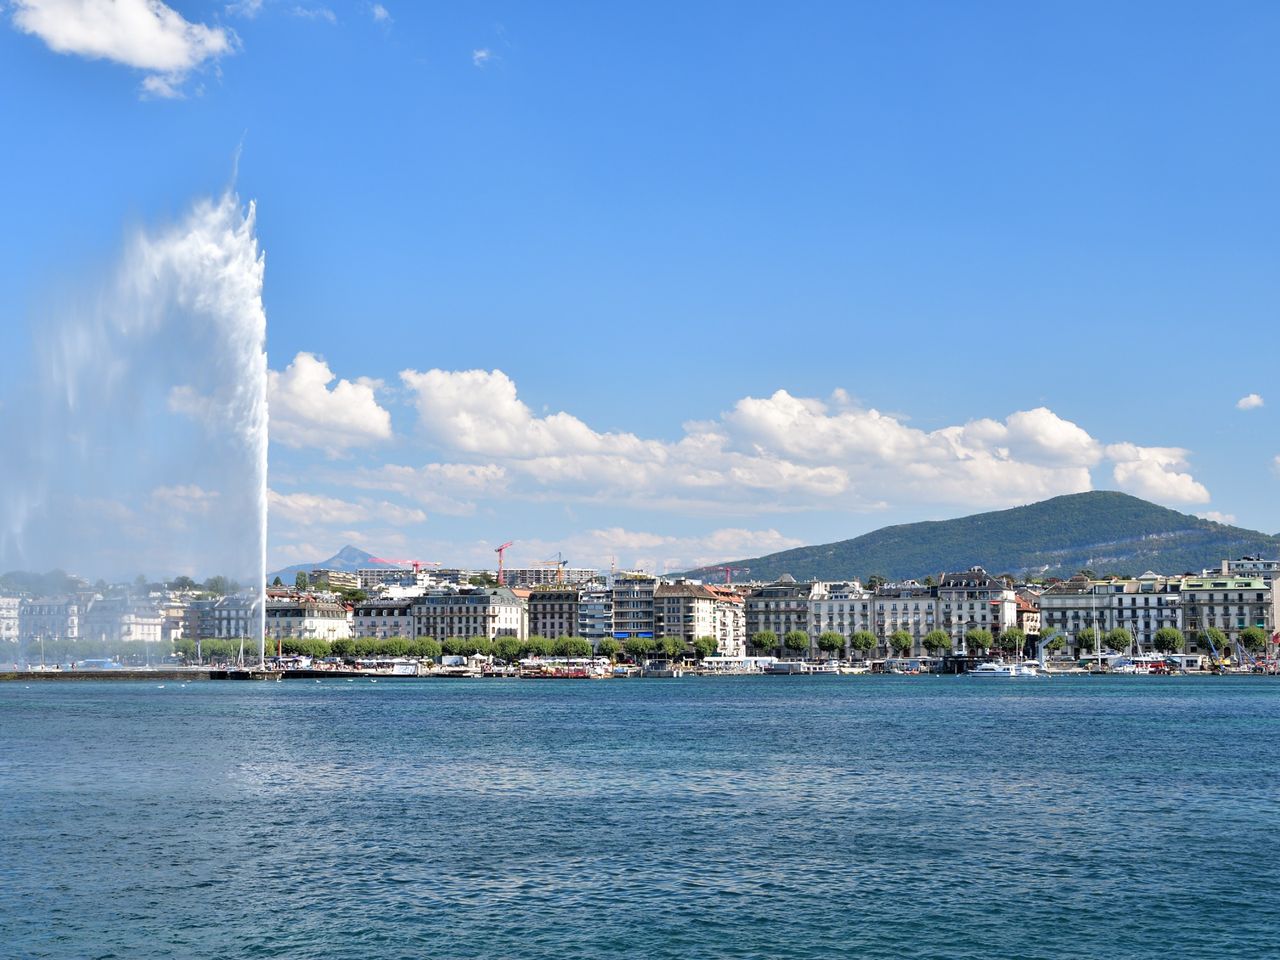 Бриллиант Женевского озера | Цена 165€, отзывы, описание экскурсии